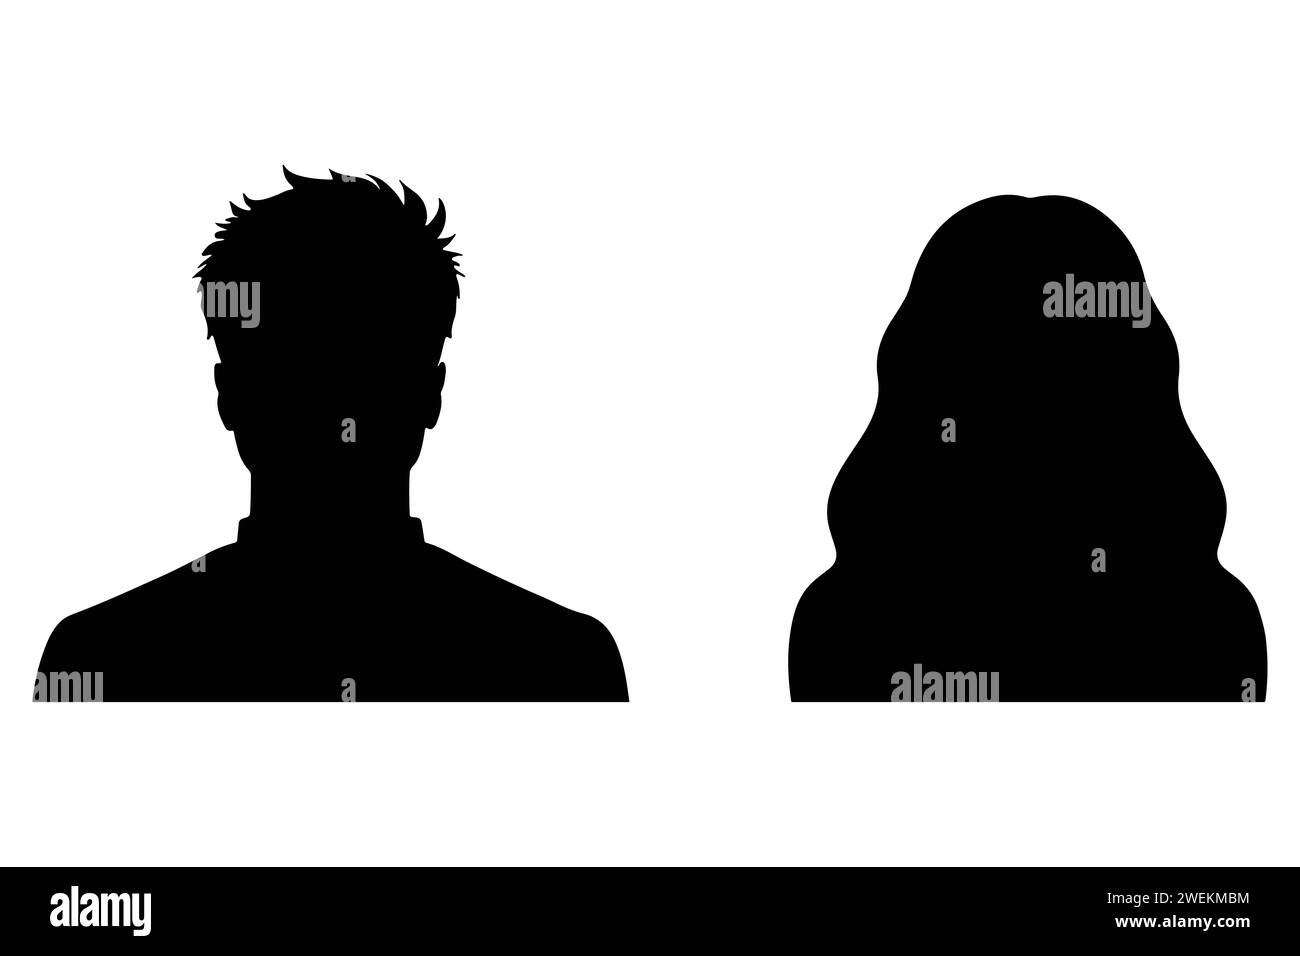 Eine Vektorillustration, die männliche und weibliche Gesichtssilhouetten oder Ikonen darstellt und als Avatare oder Profile für unbekannte oder anonyme Personen dient. Stock Vektor